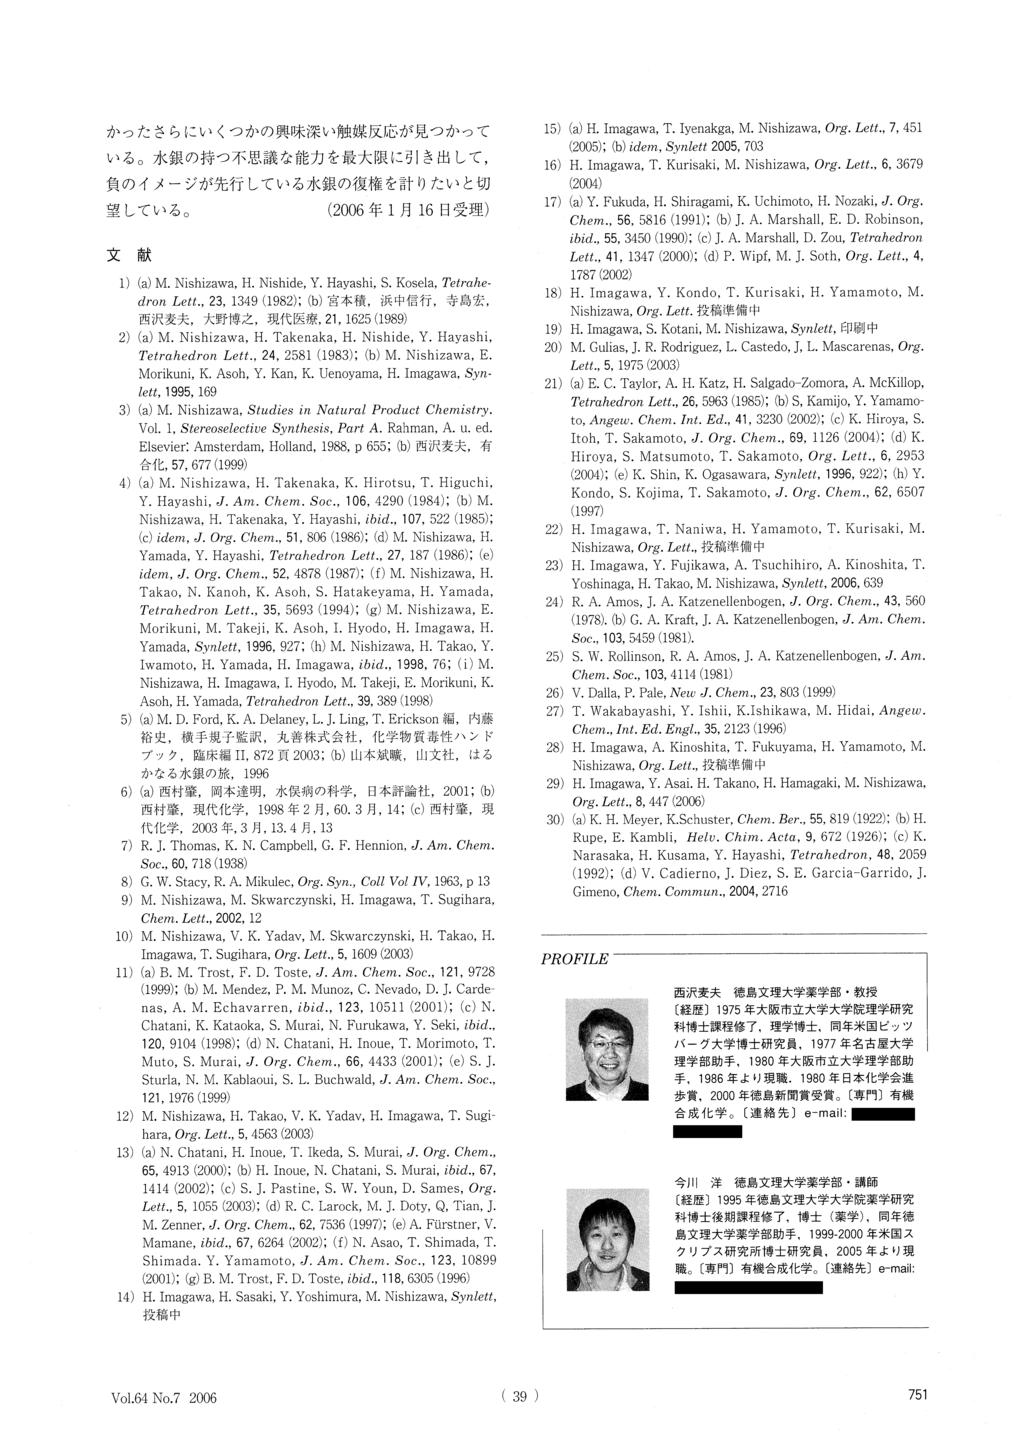 1) (a) M. Nishizawa, H. Nishide, Y. Hayashi, S. Kosela, Tetrahedron Lett., 23, 1349 (1982); (b) 2) (a) M. Nishizawa, H. Takenaka, H. Nishide, Y. Hayashi, Tetrahedron Lett., 24, 2581 (1983); (b) M.